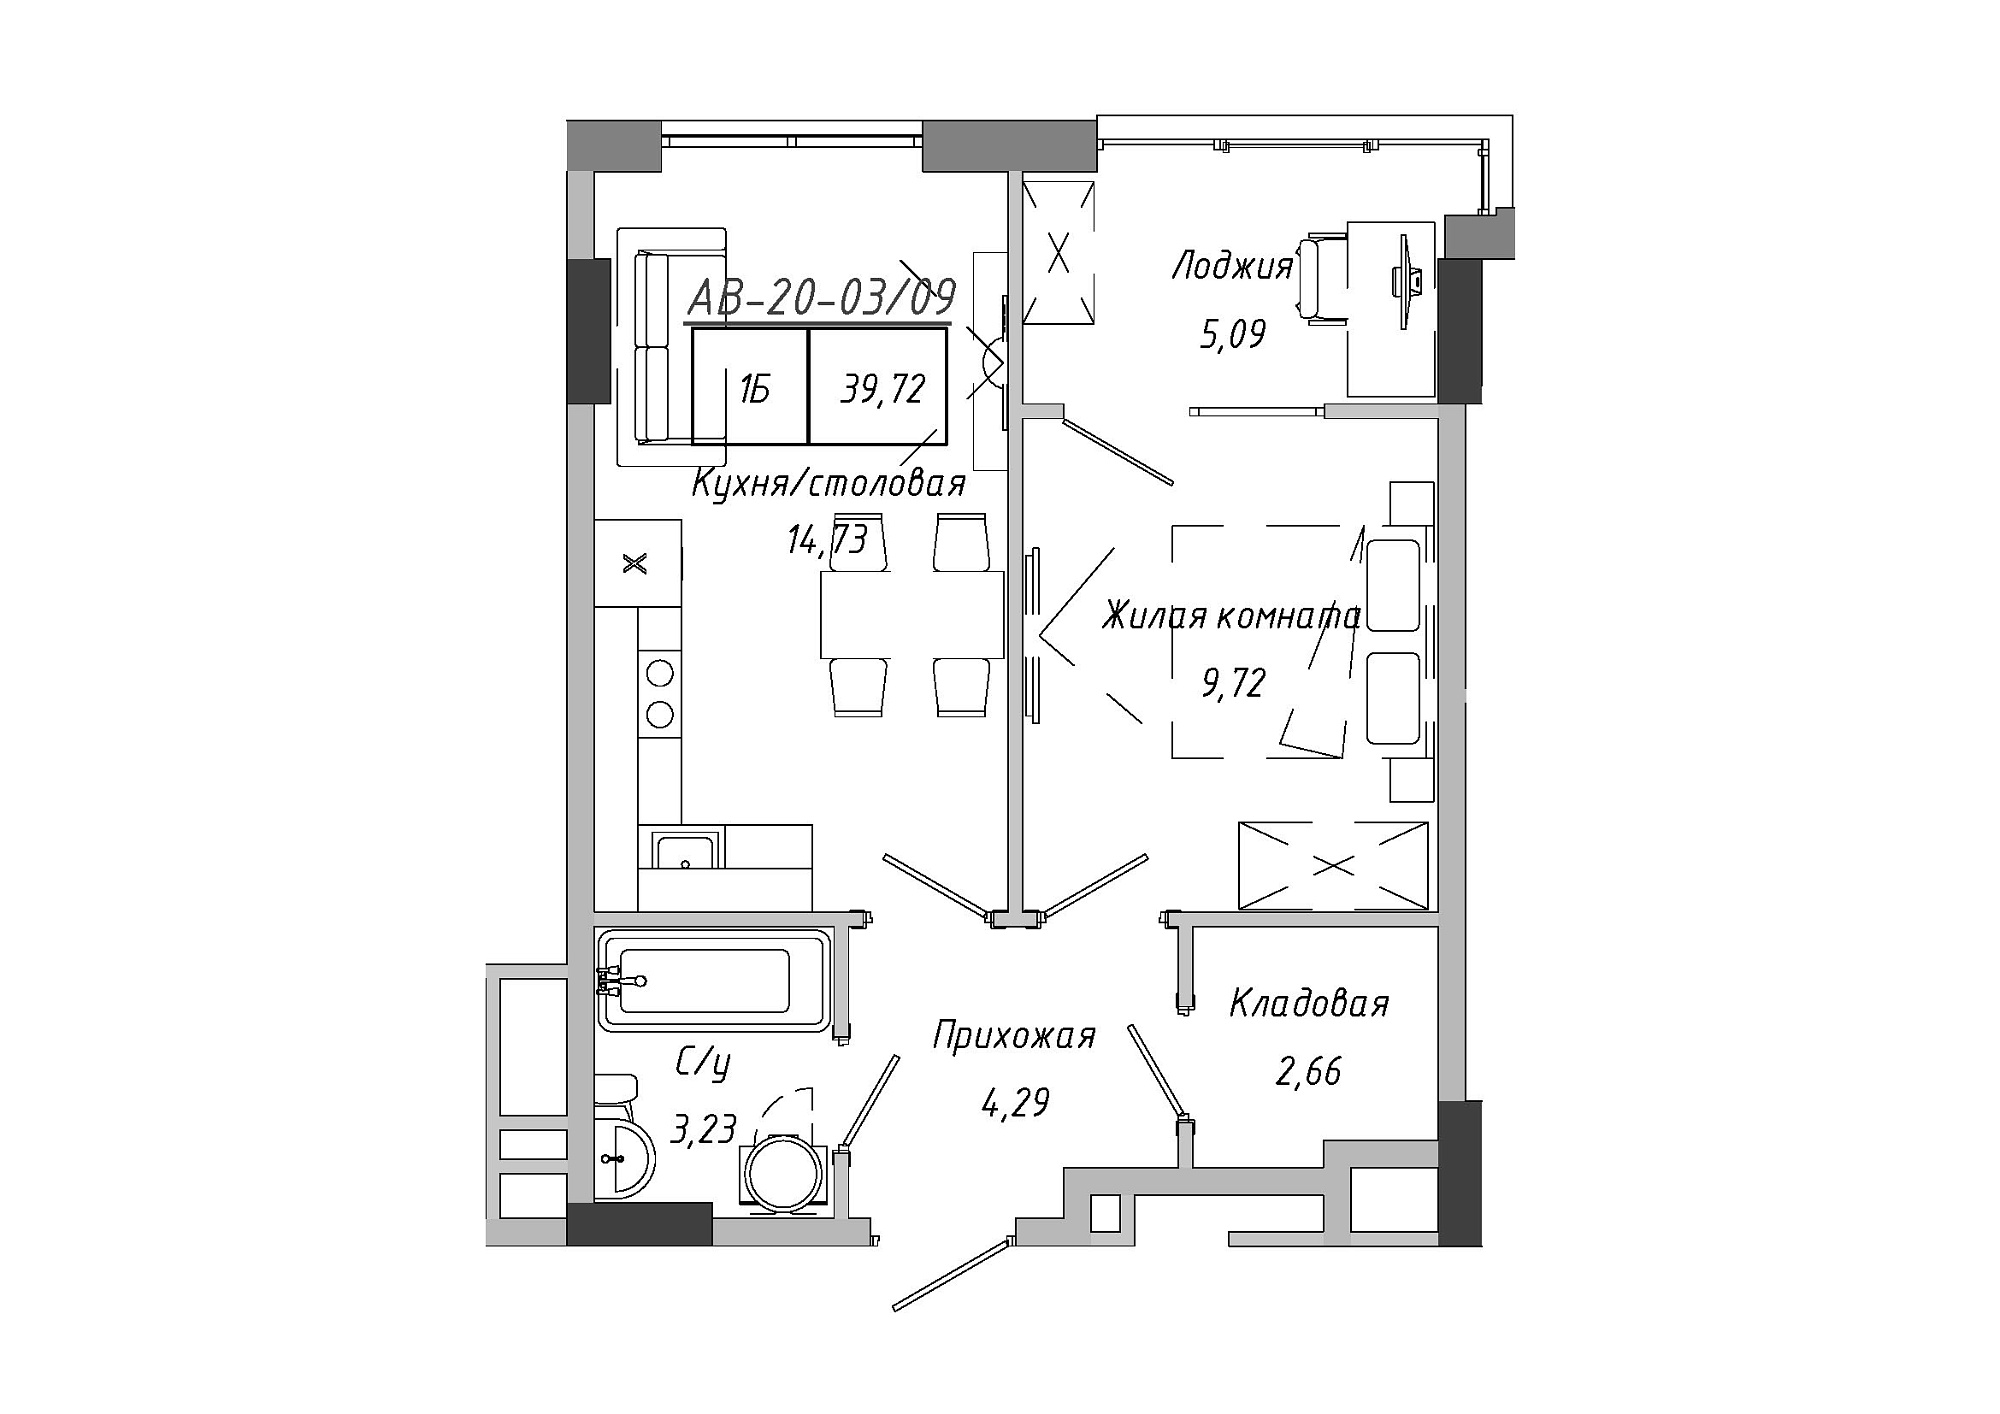 Планировка 1-к квартира площей 39.72м2, AB-20-03/00009.